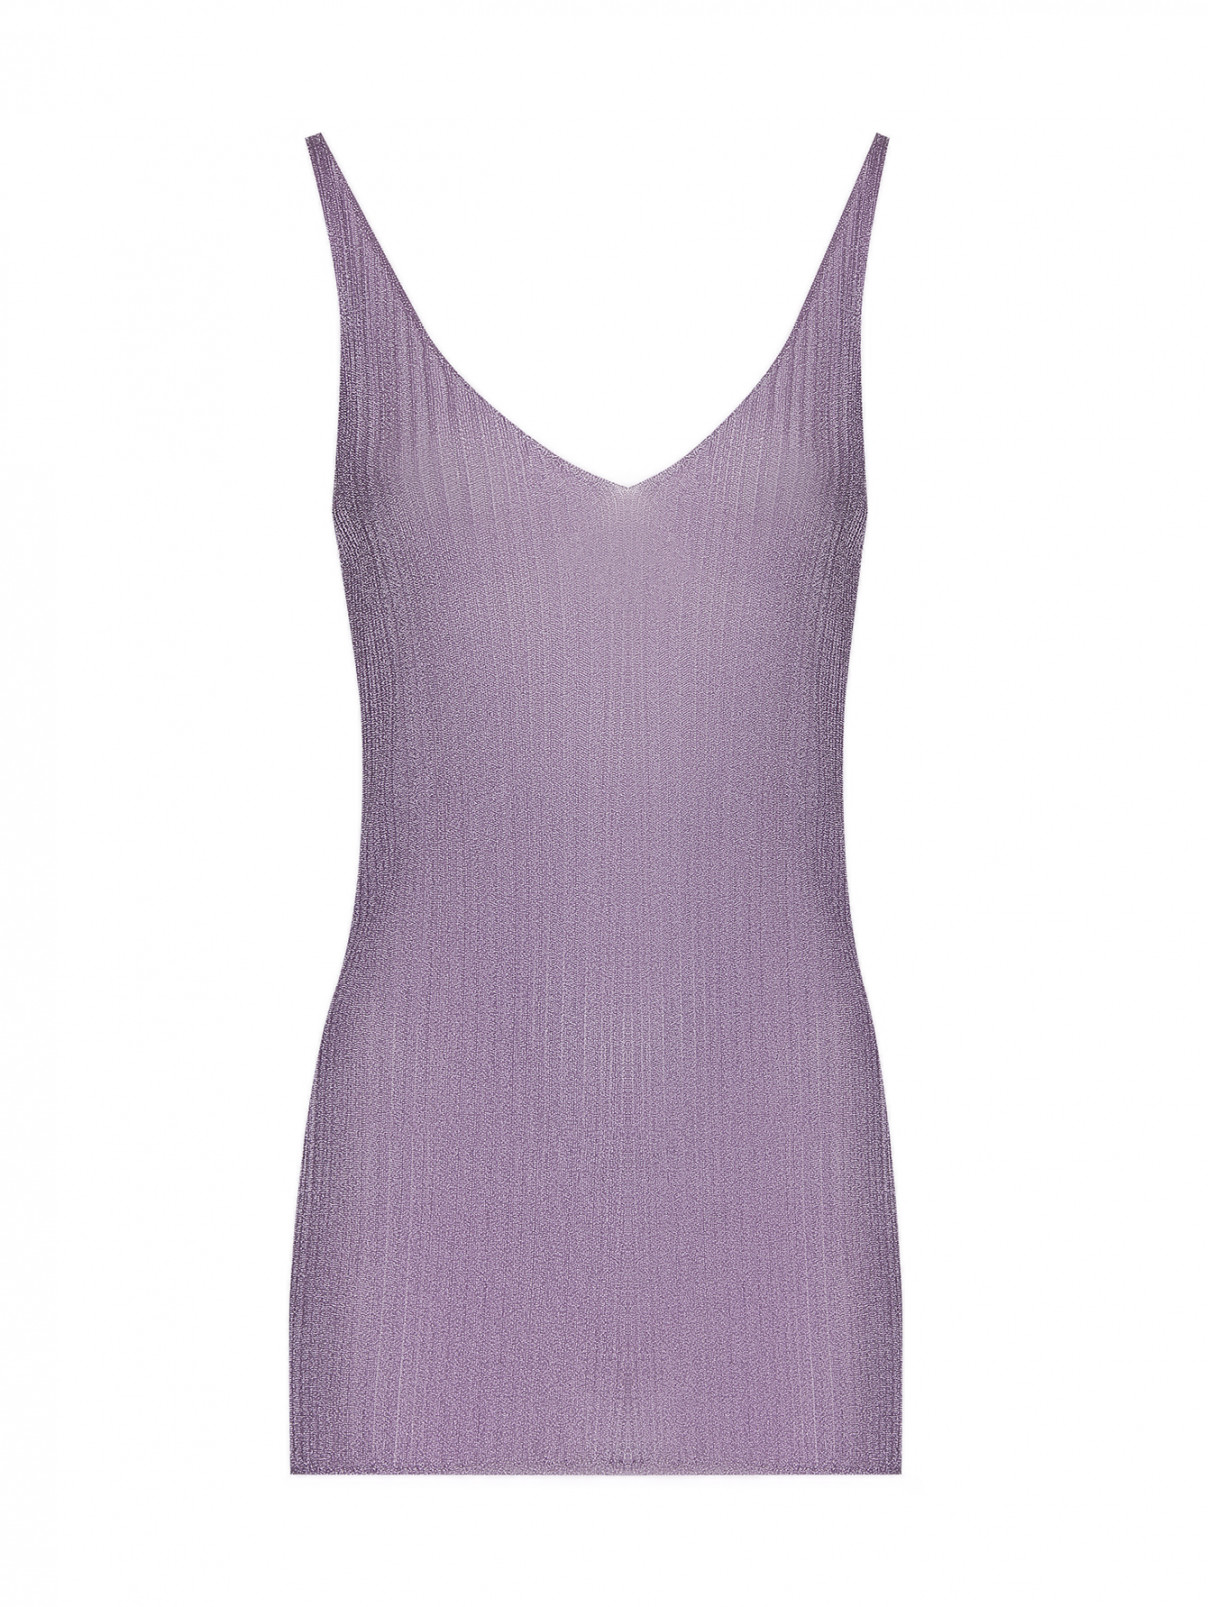 Топ из смешанной вискозы с V-образным вырезом Dorothee Schumacher  –  Общий вид  – Цвет:  Фиолетовый